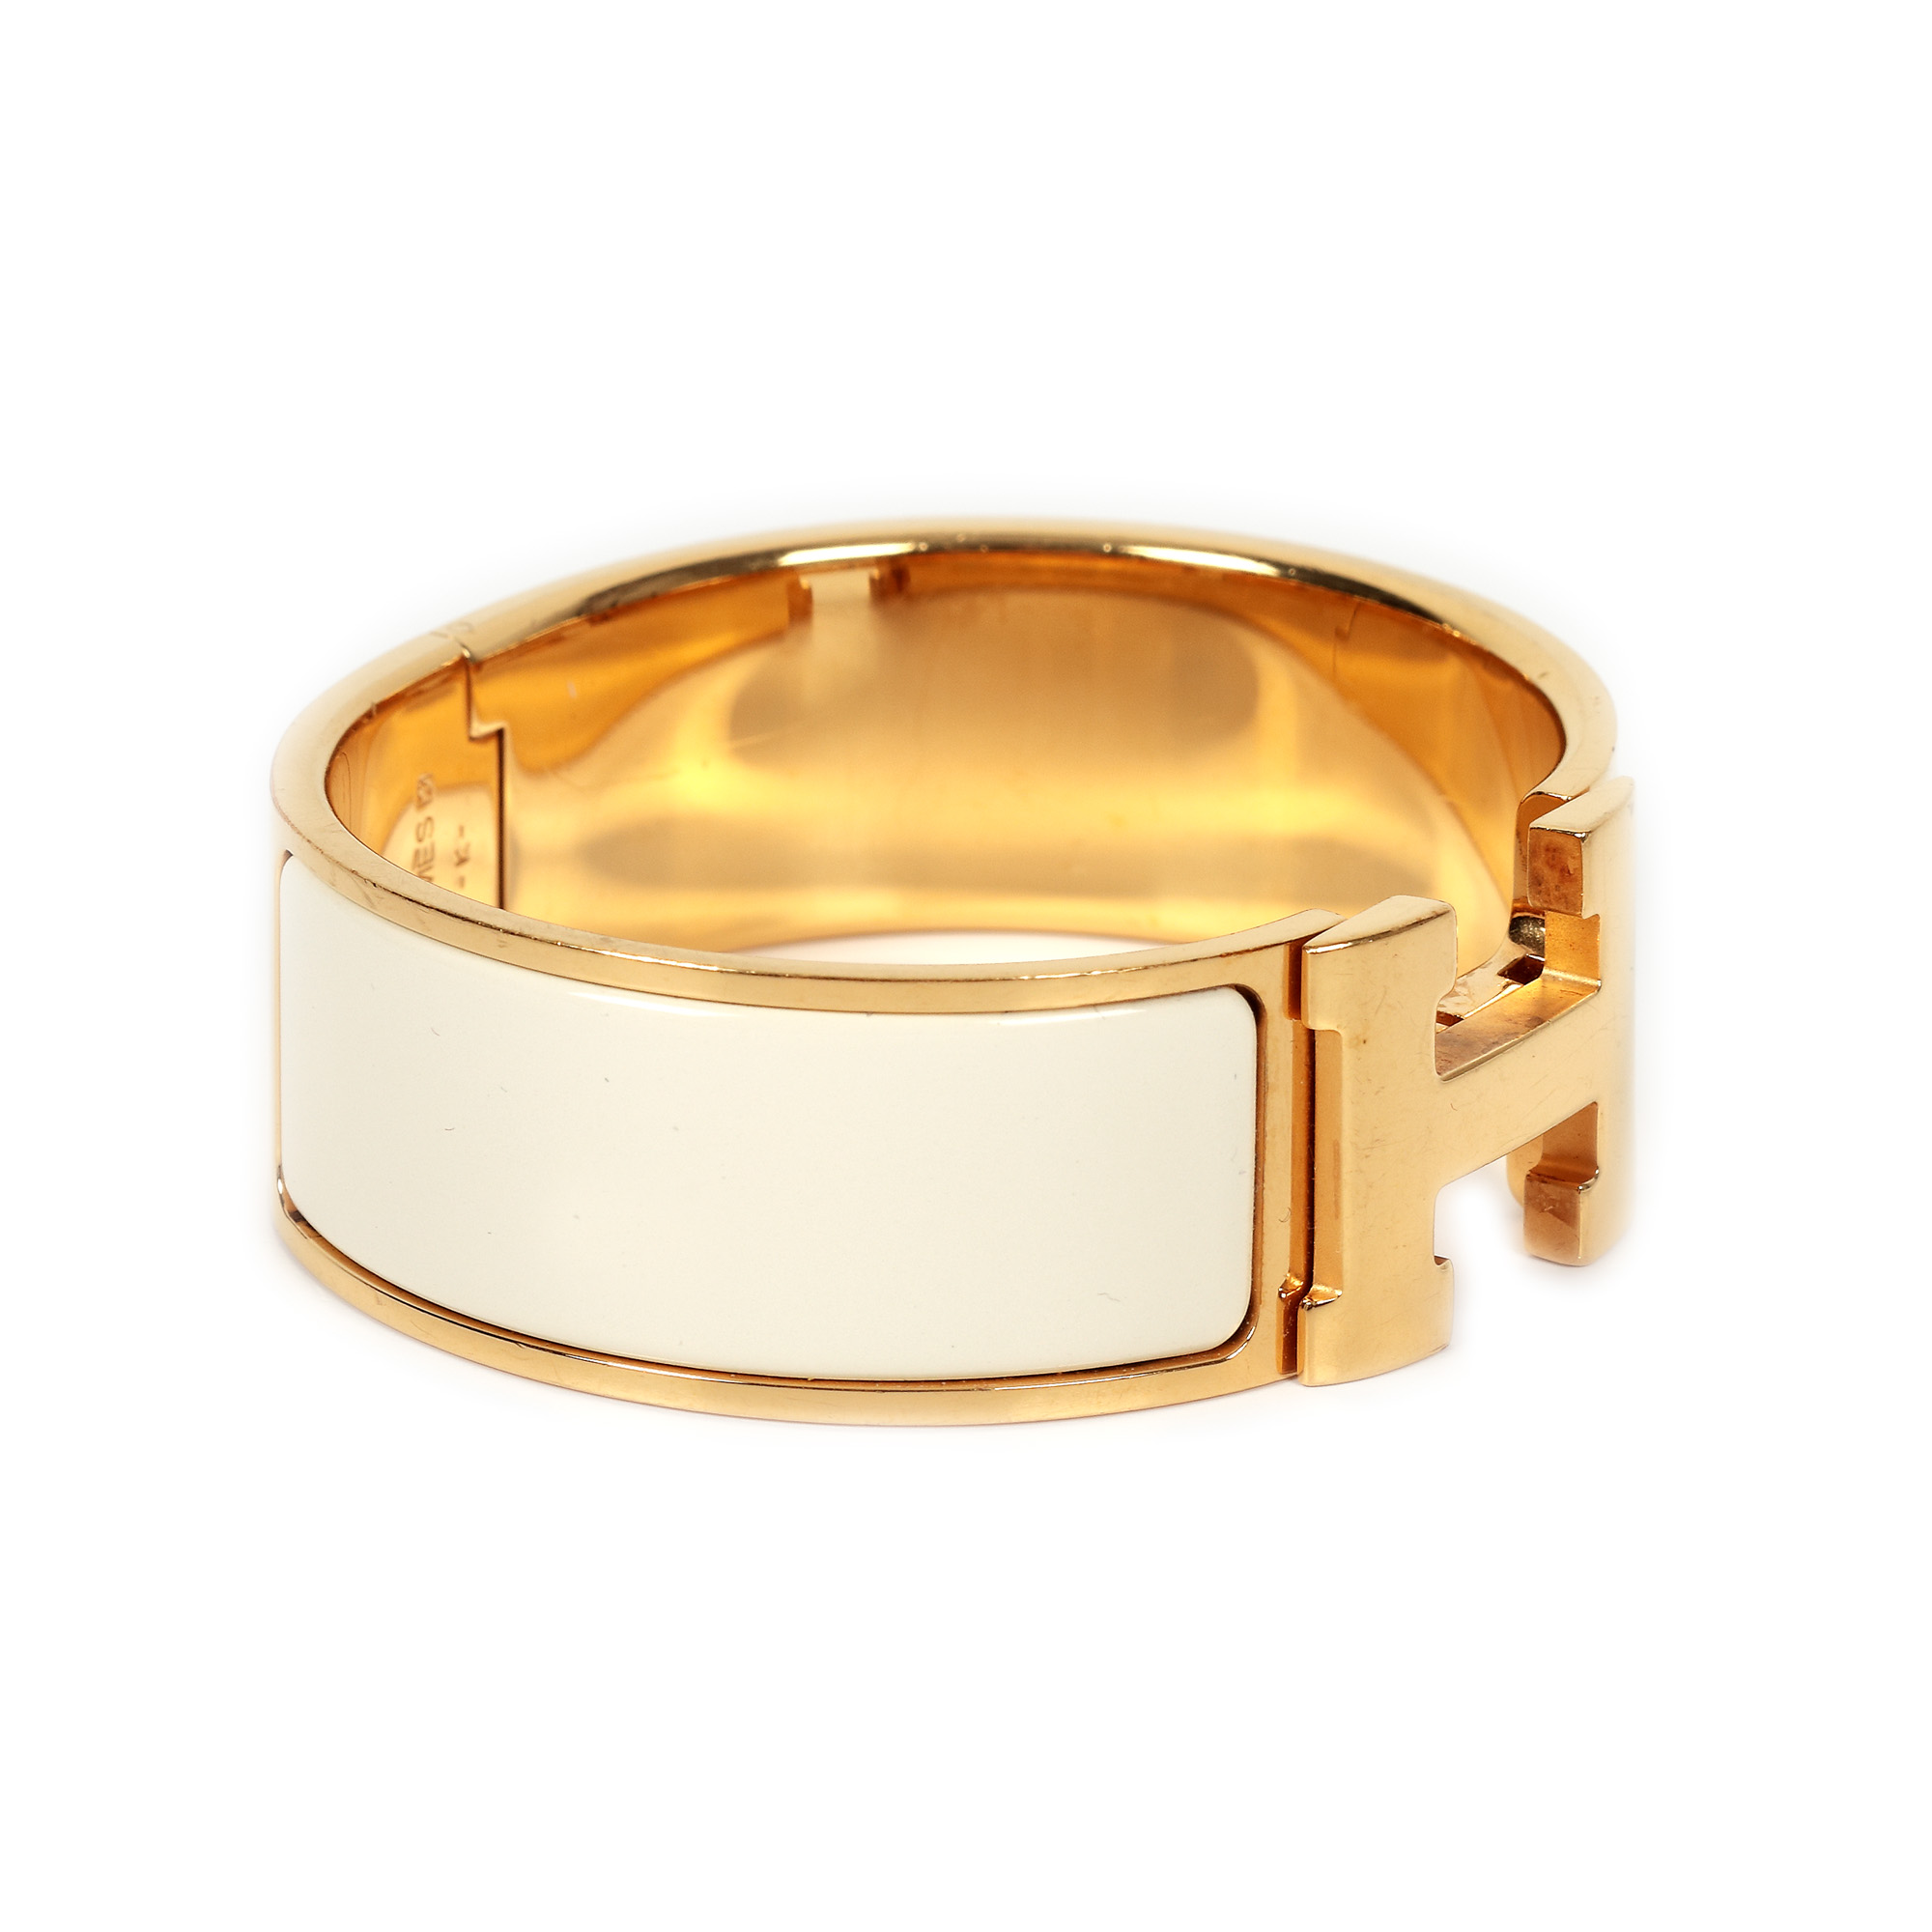 Hermès, Clic Clac bracelet, white enamel - Image 2 of 4